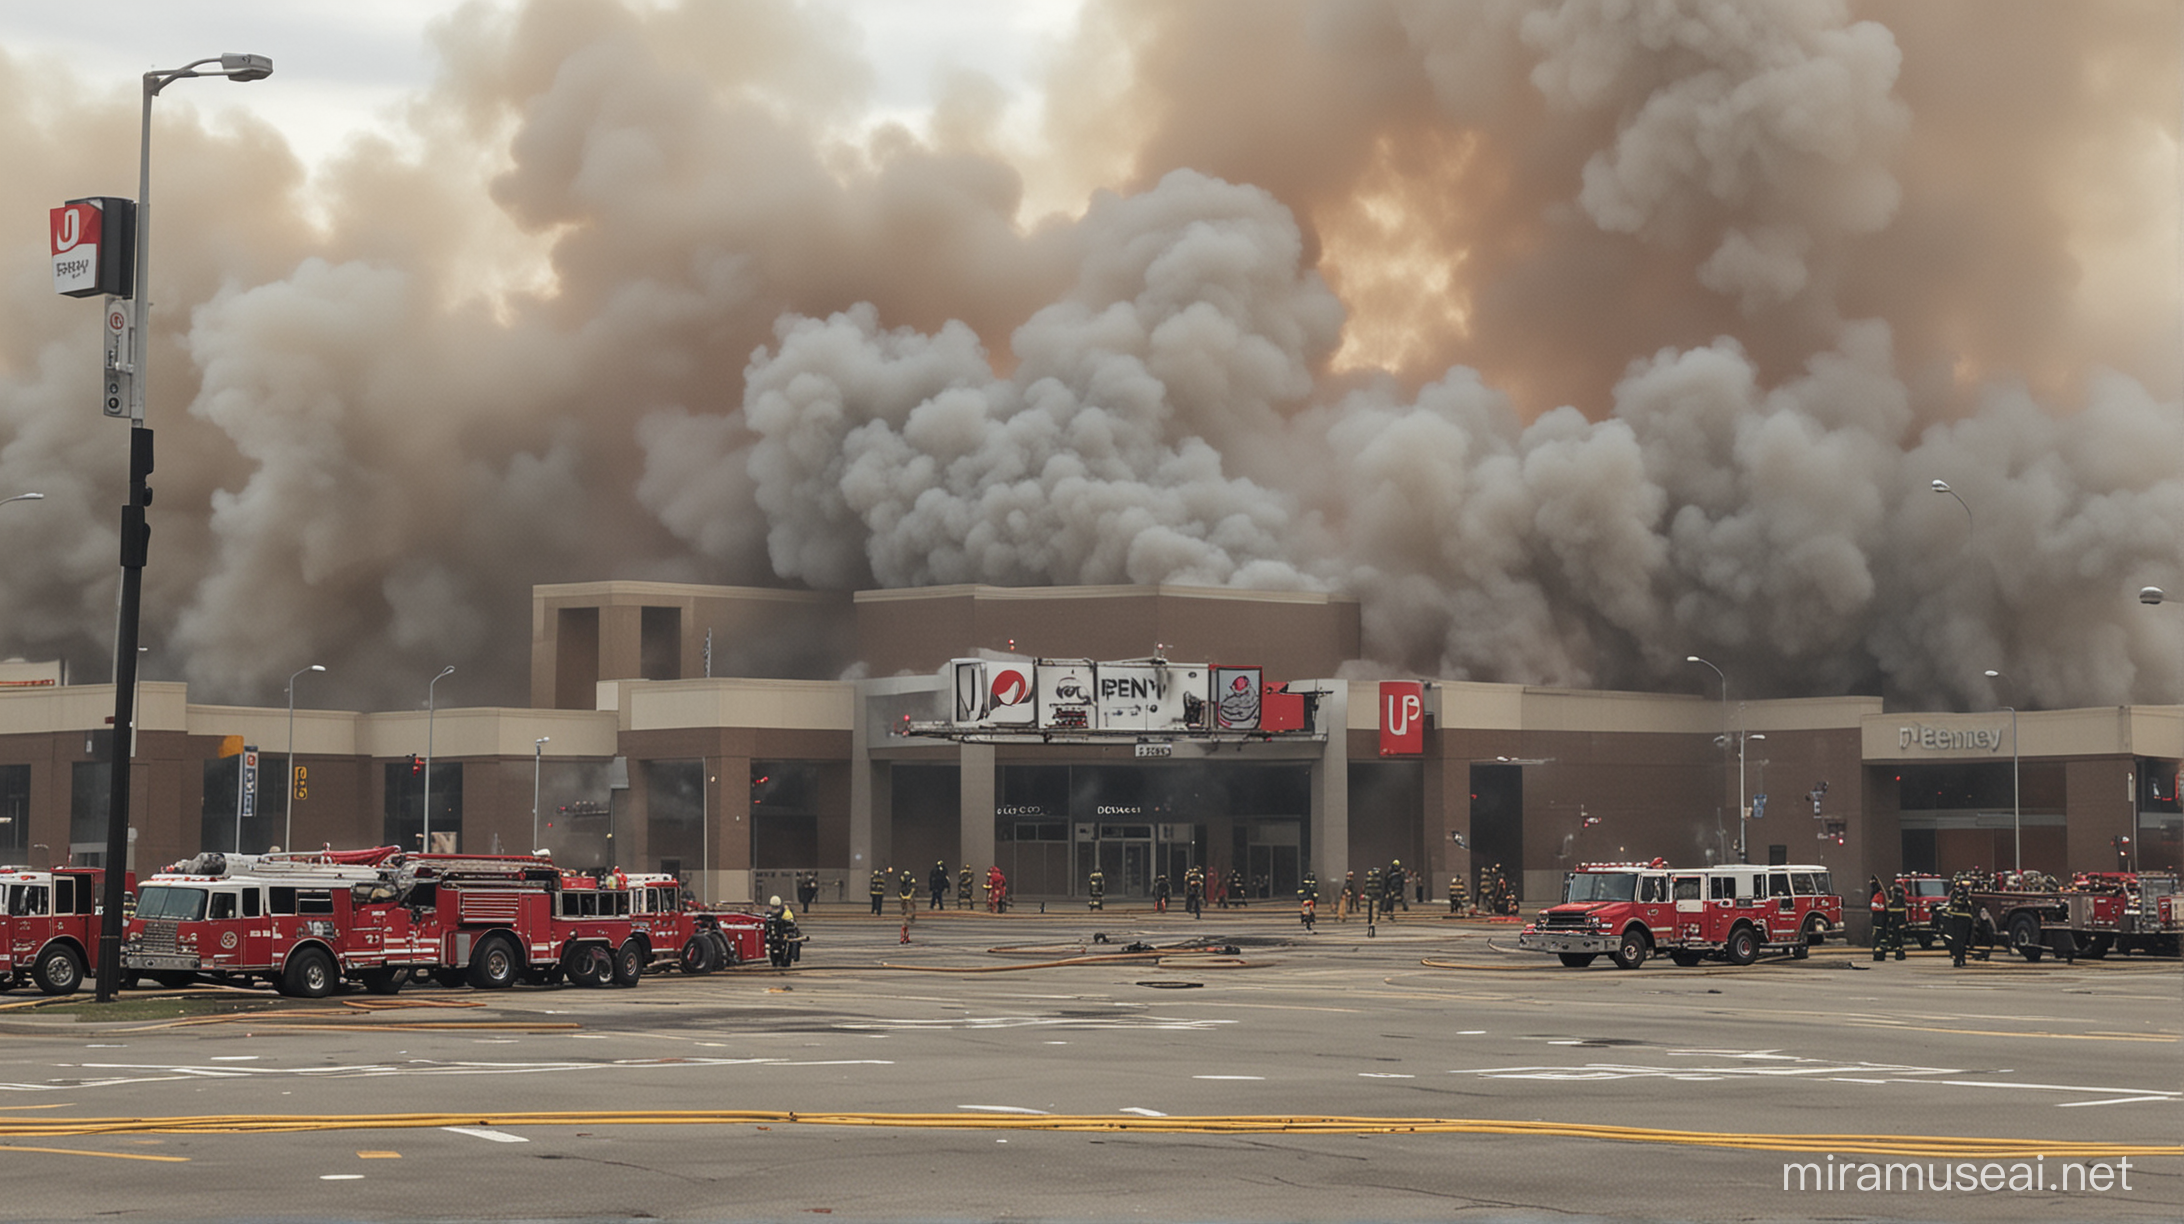 Massive Fire Engulfs JC Penney Store in Urban Blaze